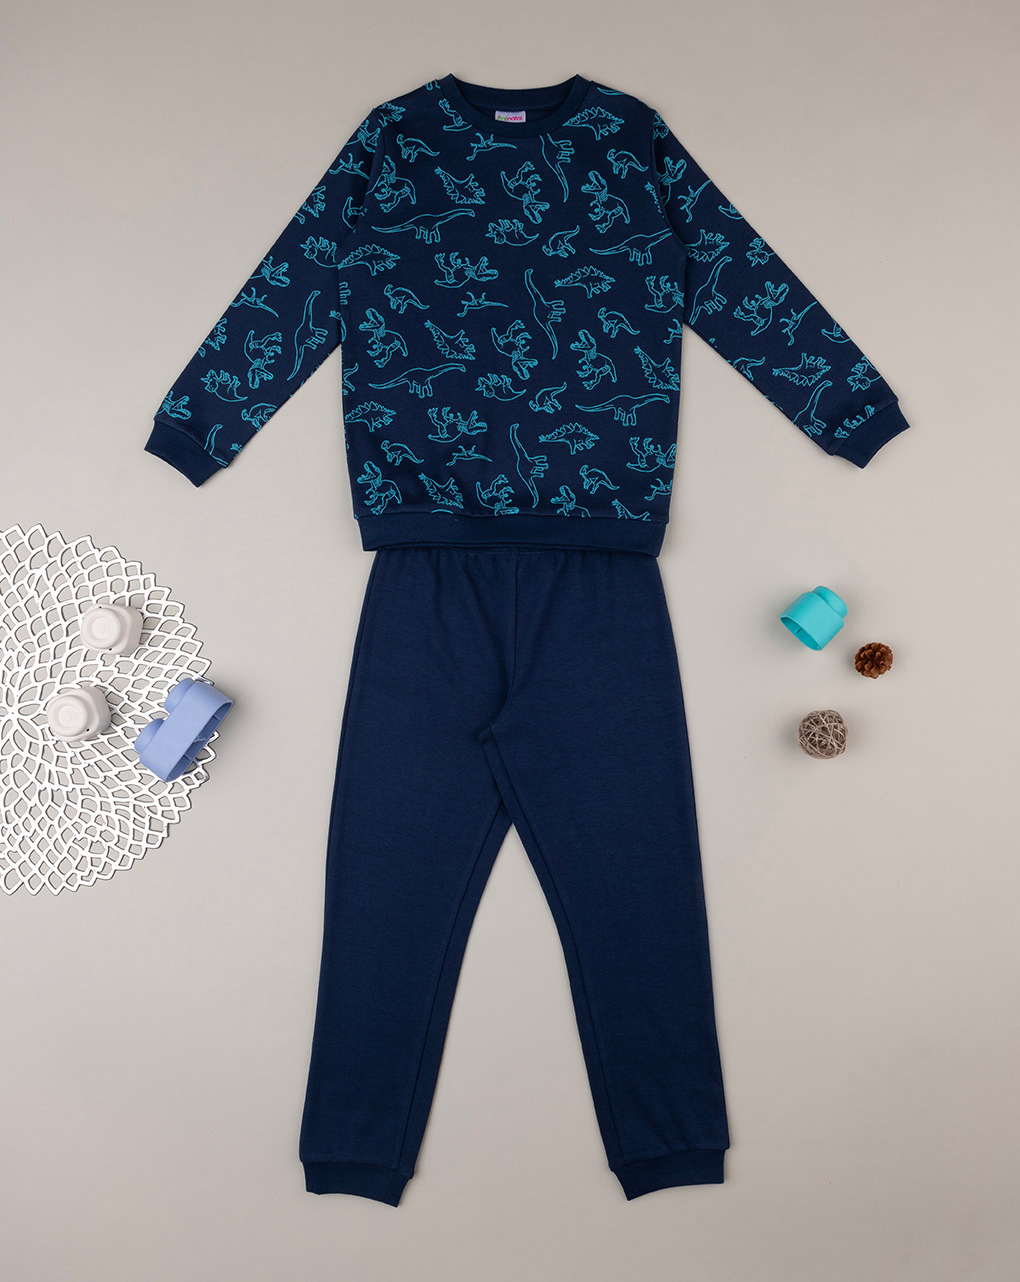 παιδική πιτζάμα μπλε με δεινόσαυρους για αγόρι - Prénatal